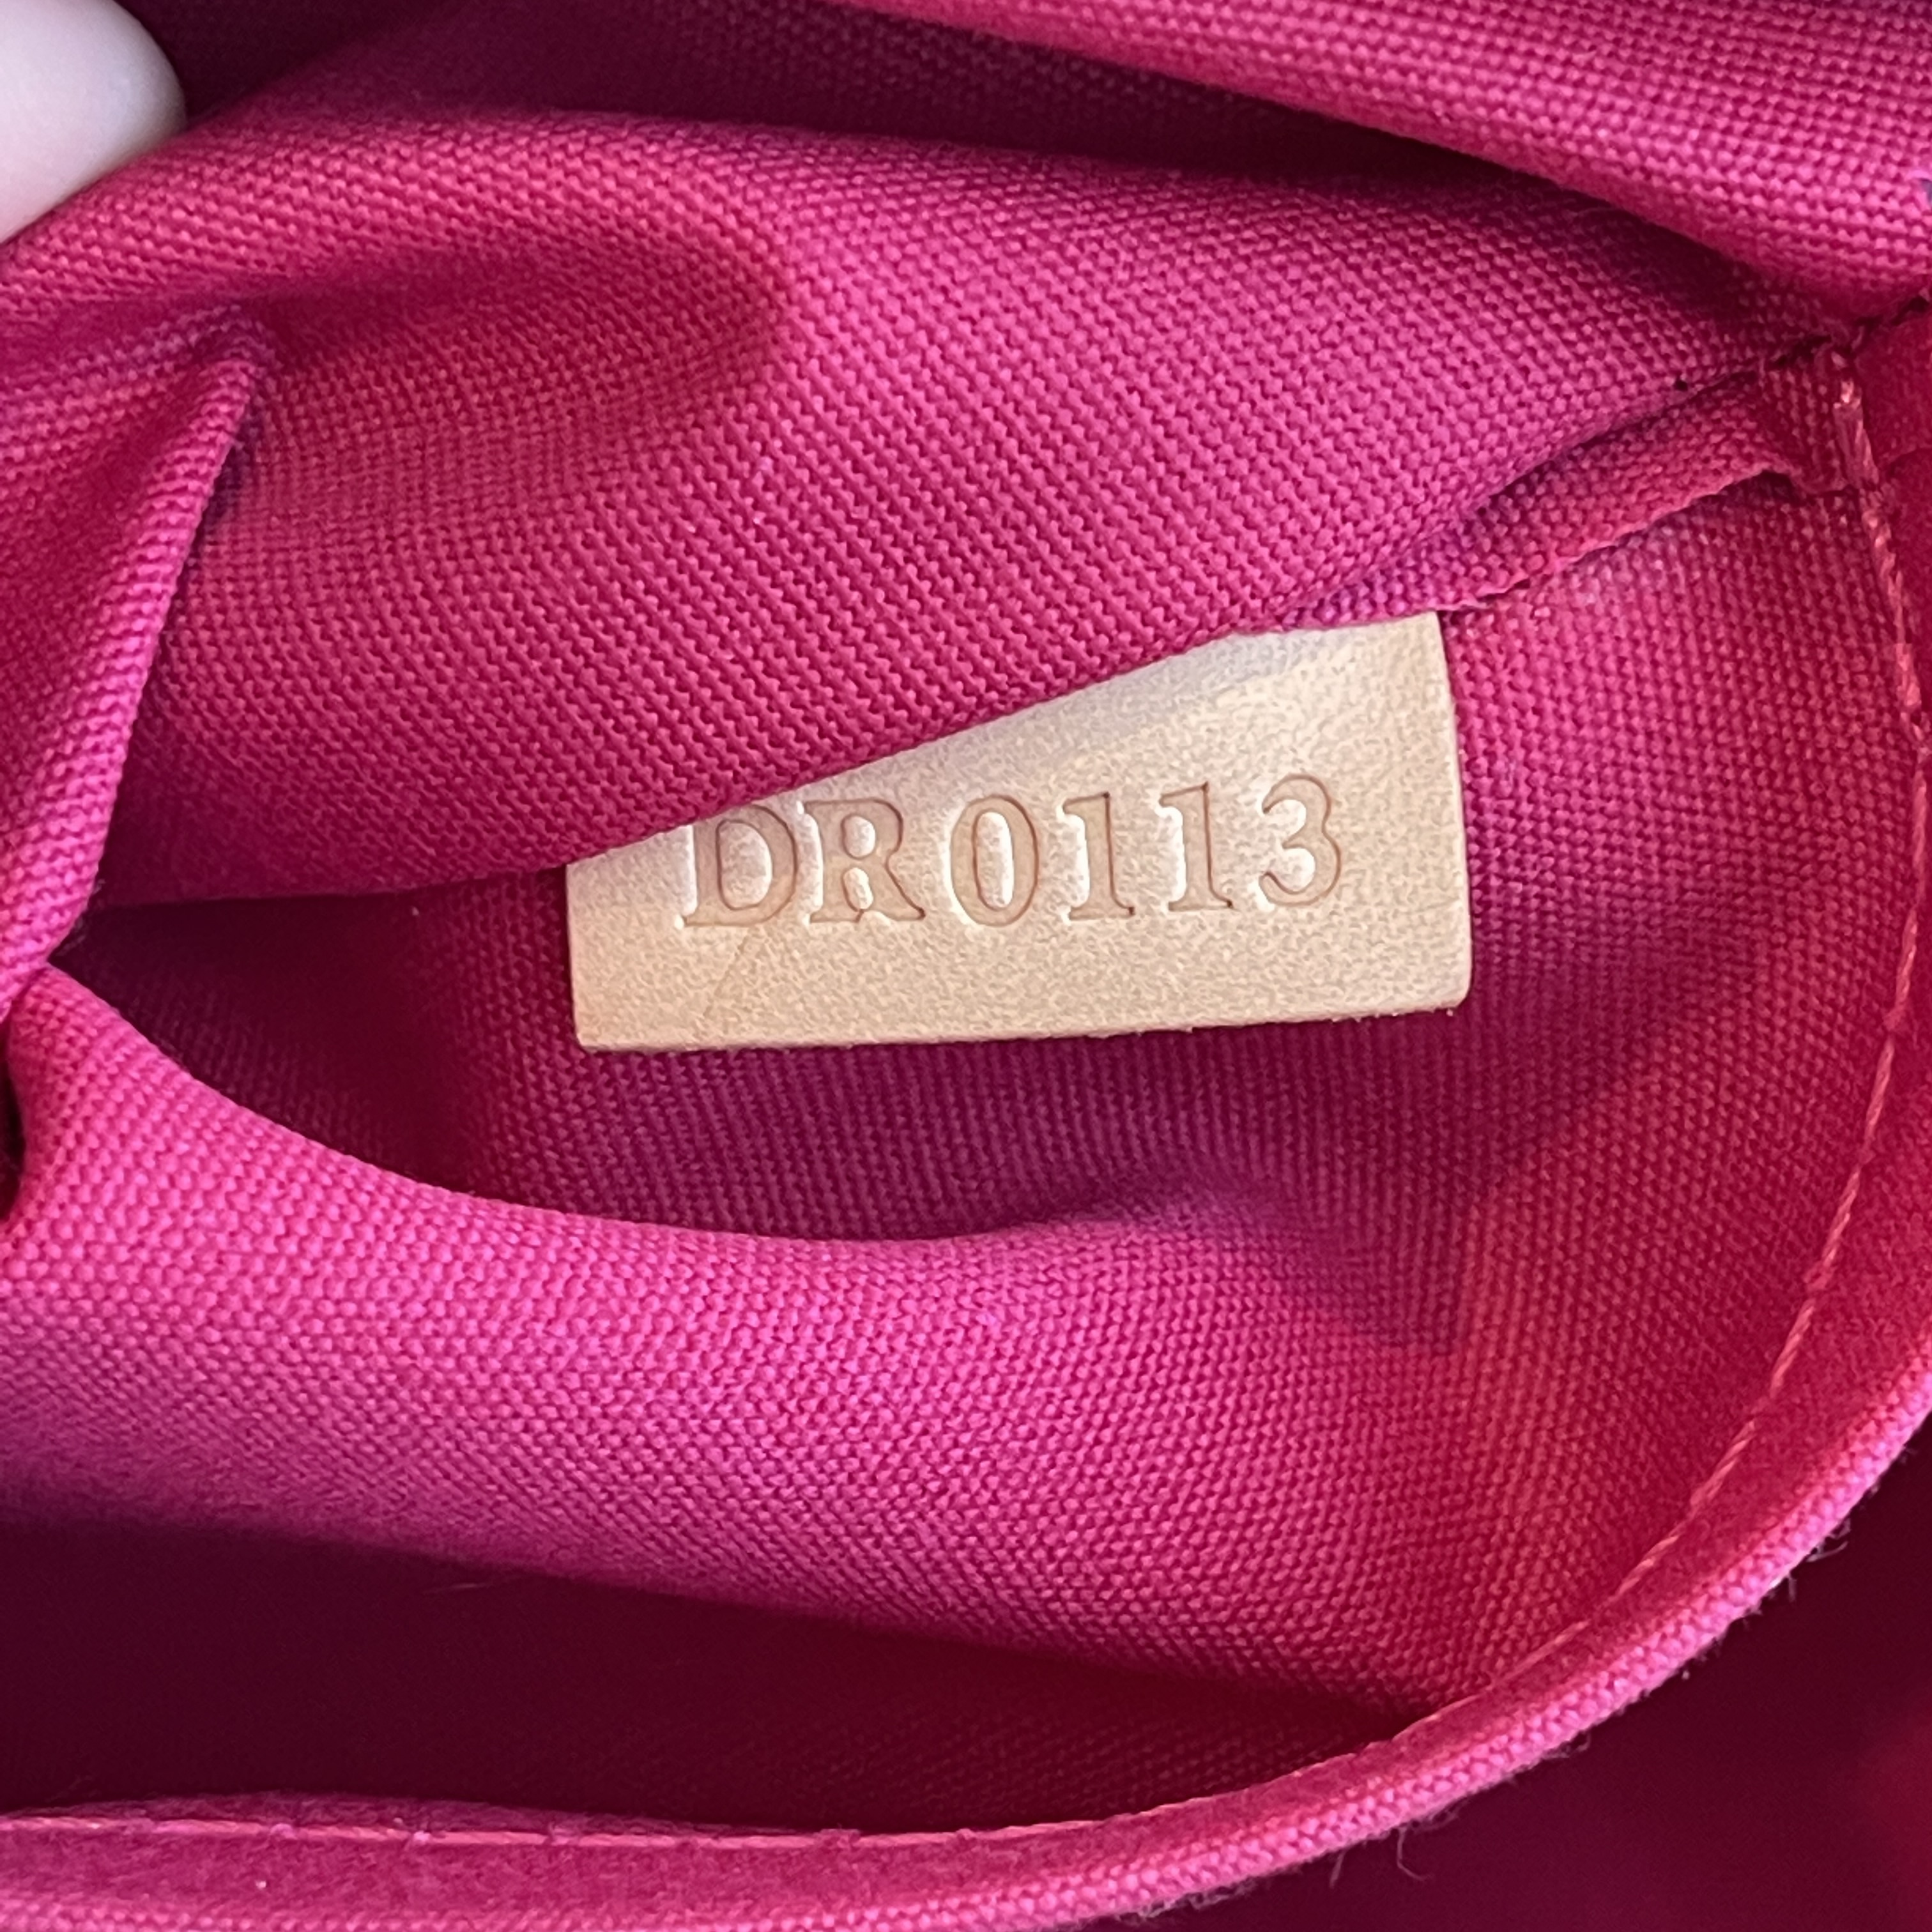 Mini pouchette bouton de rose  Bags, Louis vuitton accessories, Victoria  secret outfits